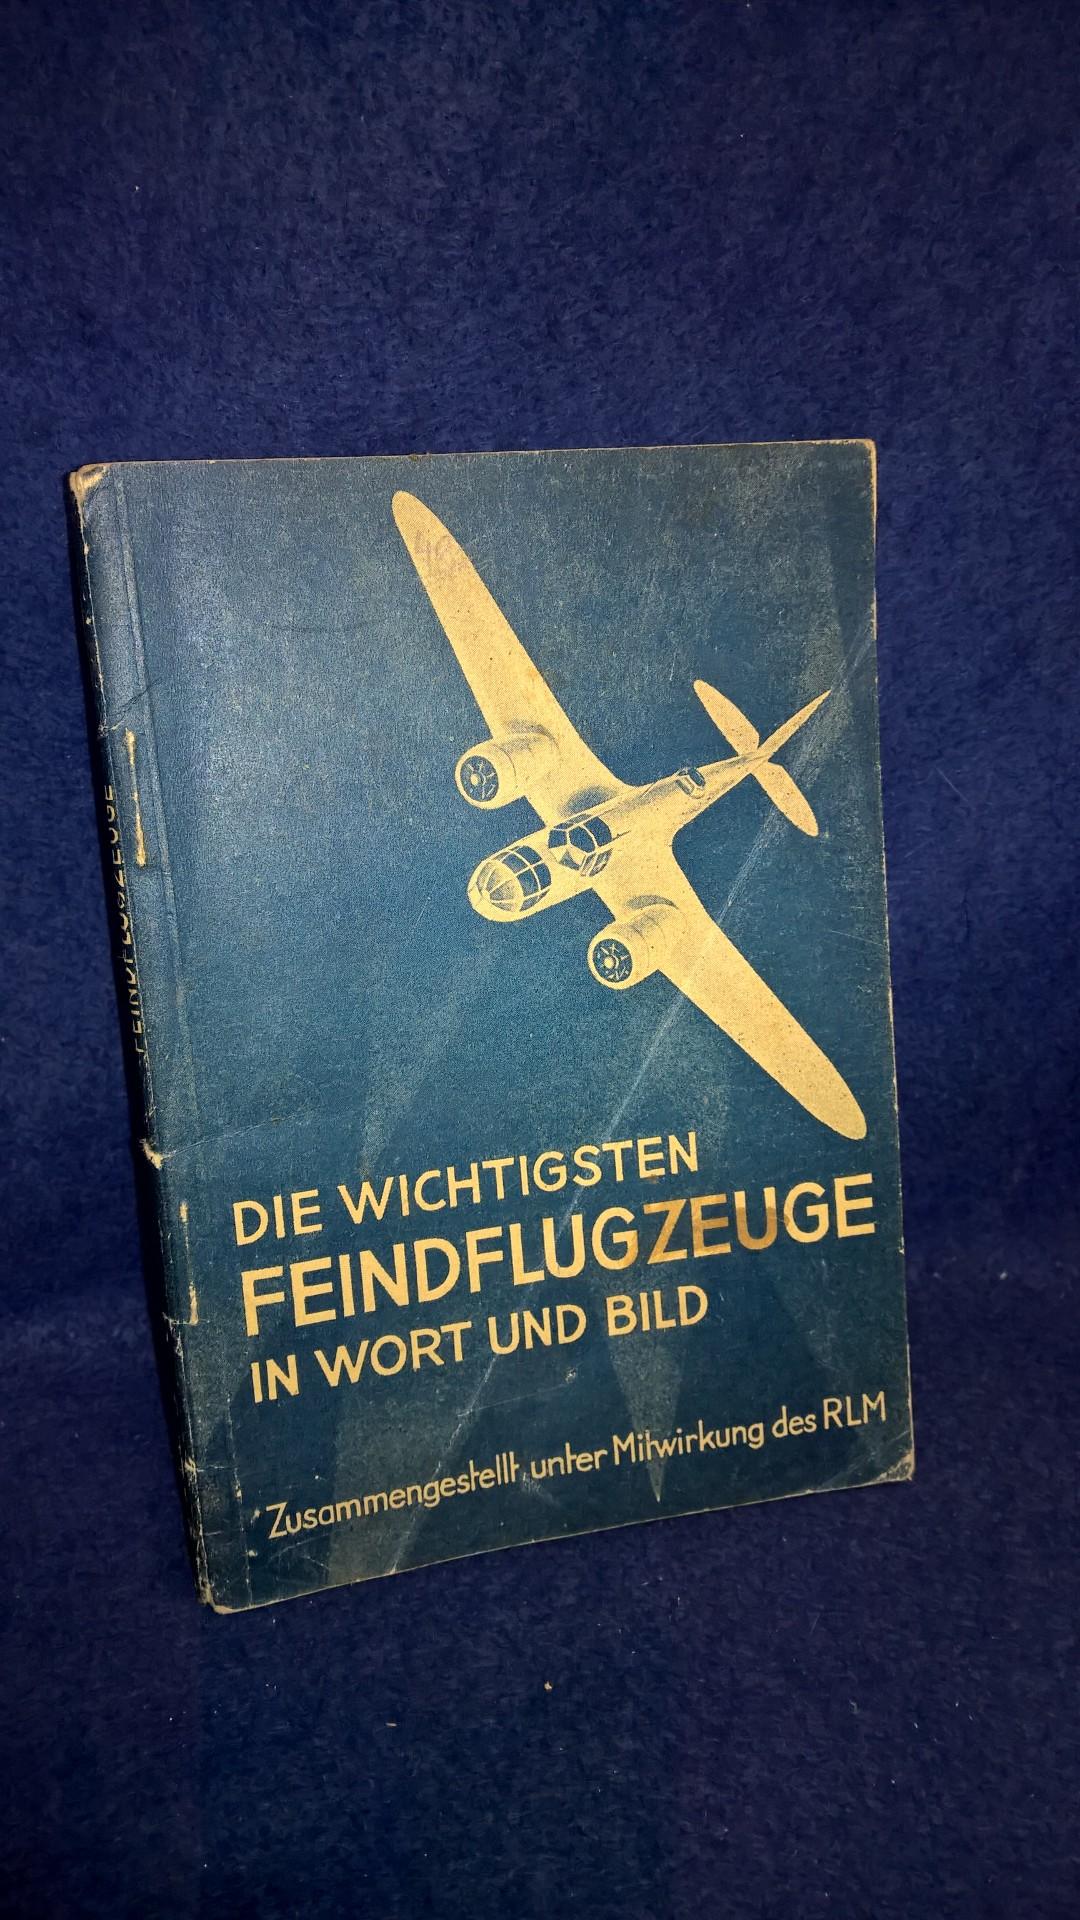 Die wichtigsten Feindflugzeuge in Wort und Bild. Stand: Sommer 1940.